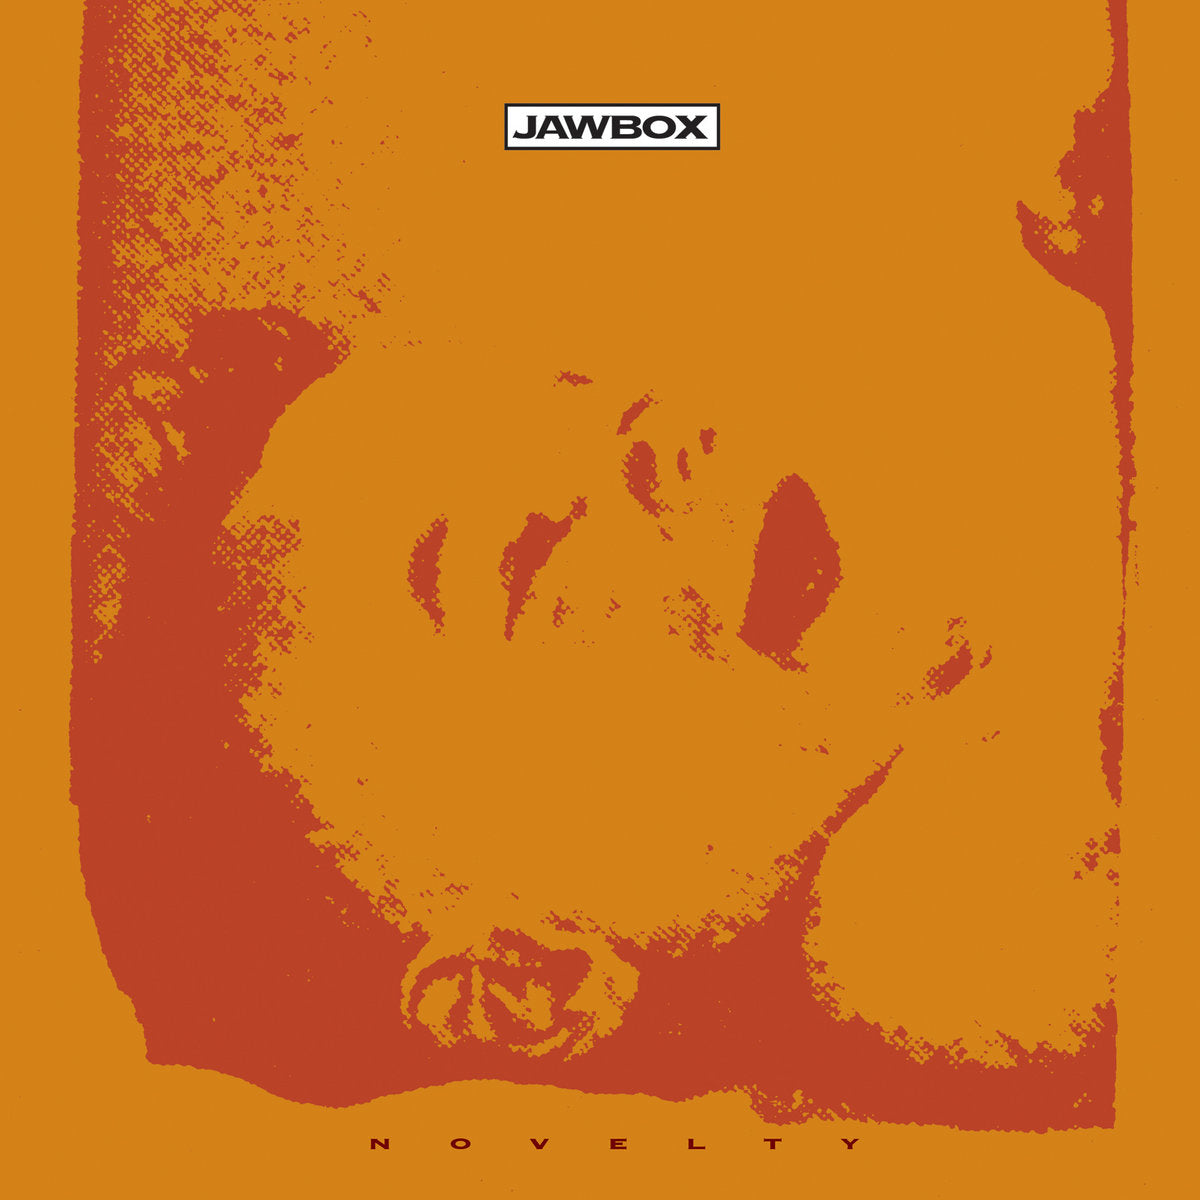 Jawbox, "Novelty" (Orange Vinyl)